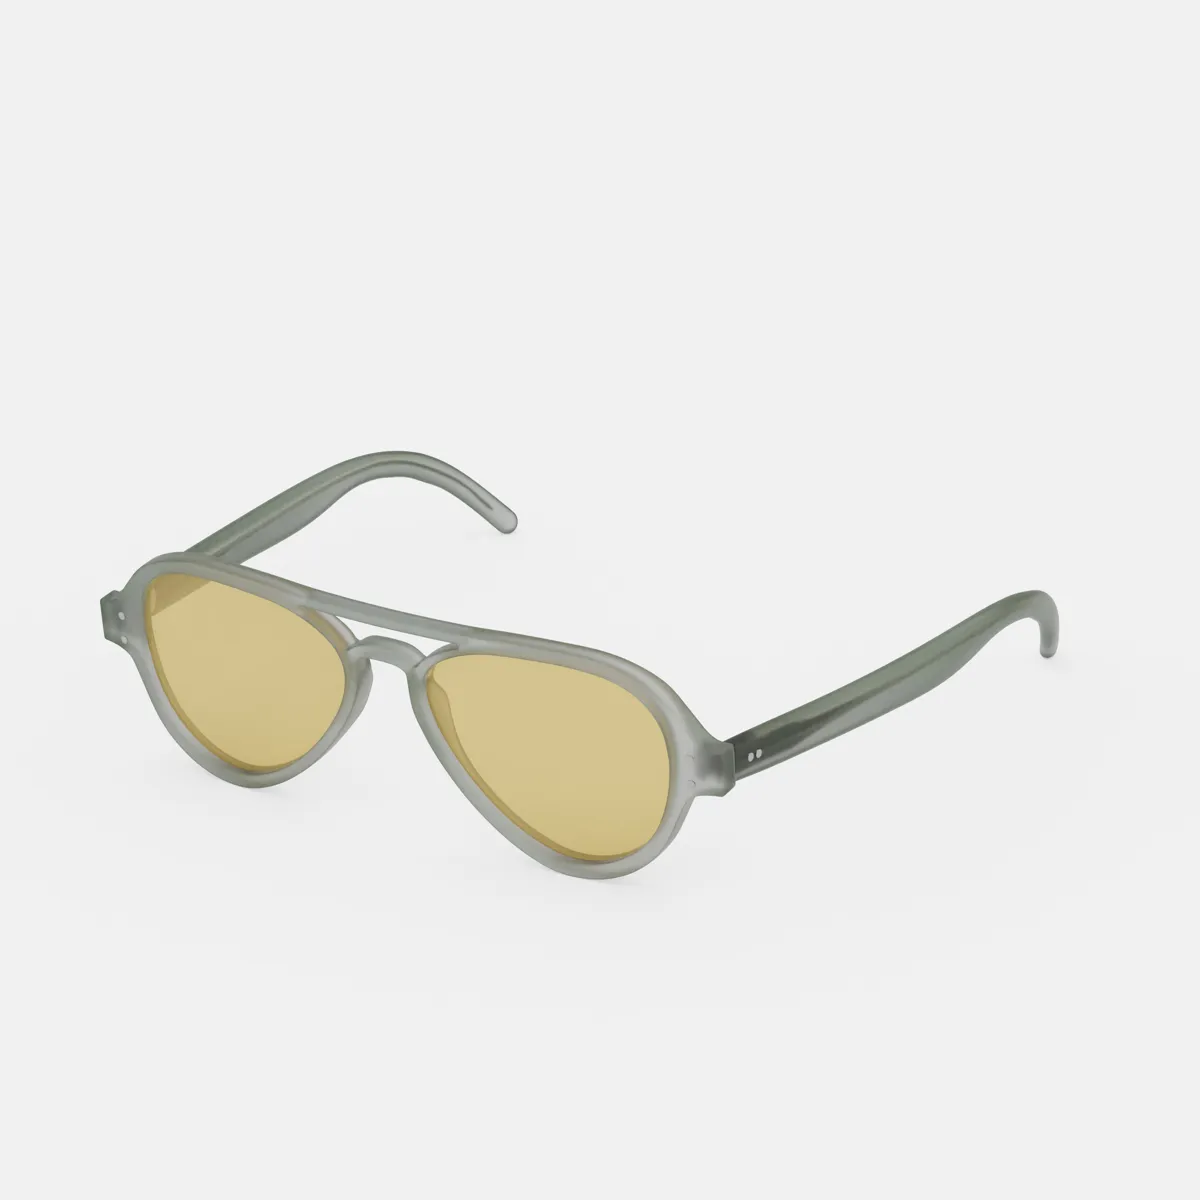 Dirks Aviator Sunglasses